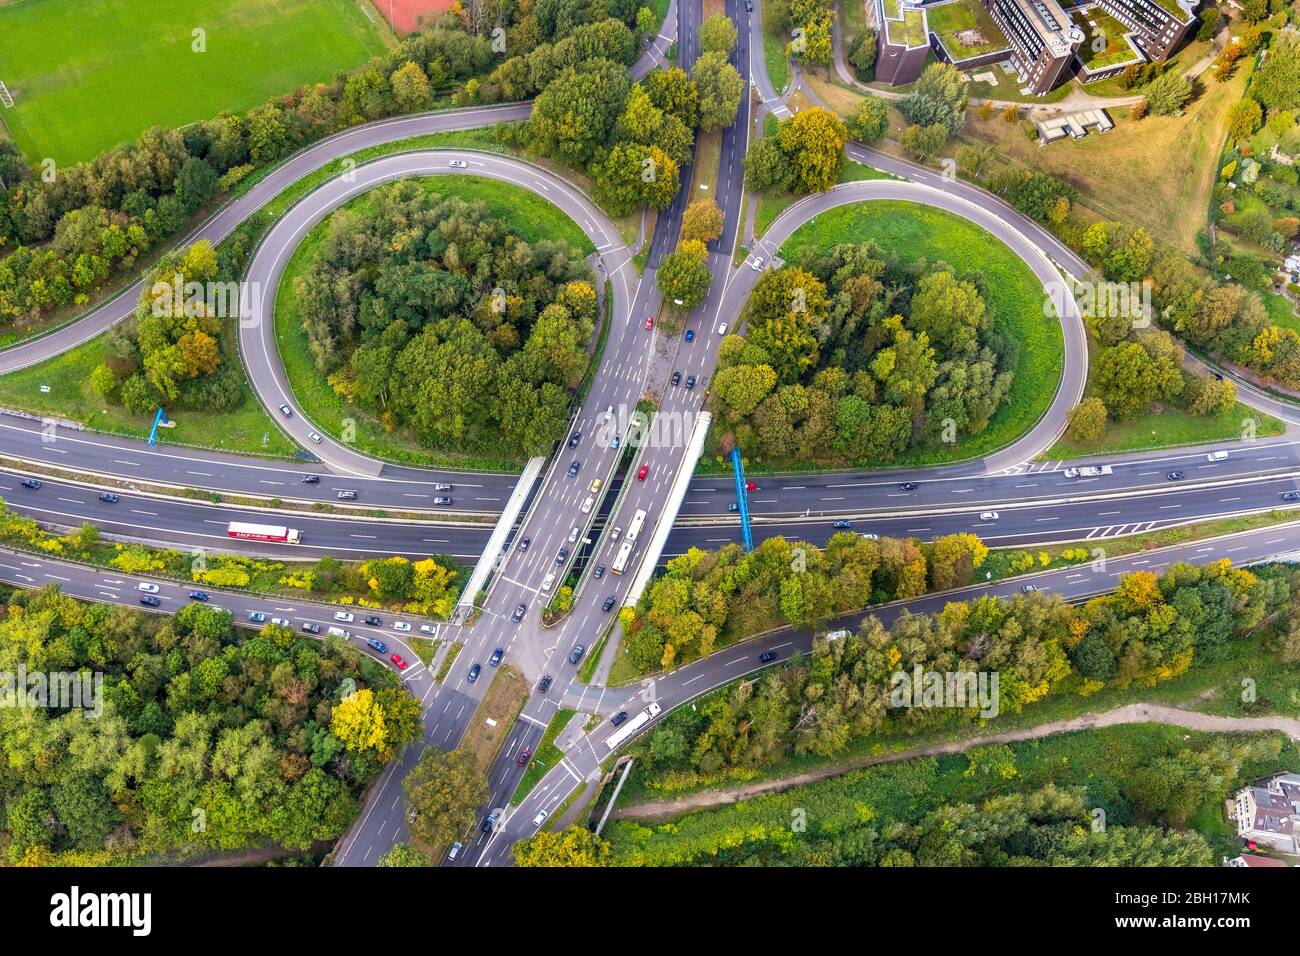 road Koenigsallee crossing highway Nordhausen Ring, 27.09.2019, aeriol view, Germany, North Rhine-Westphalia, Ruhr Area, Bochum Stock Photo